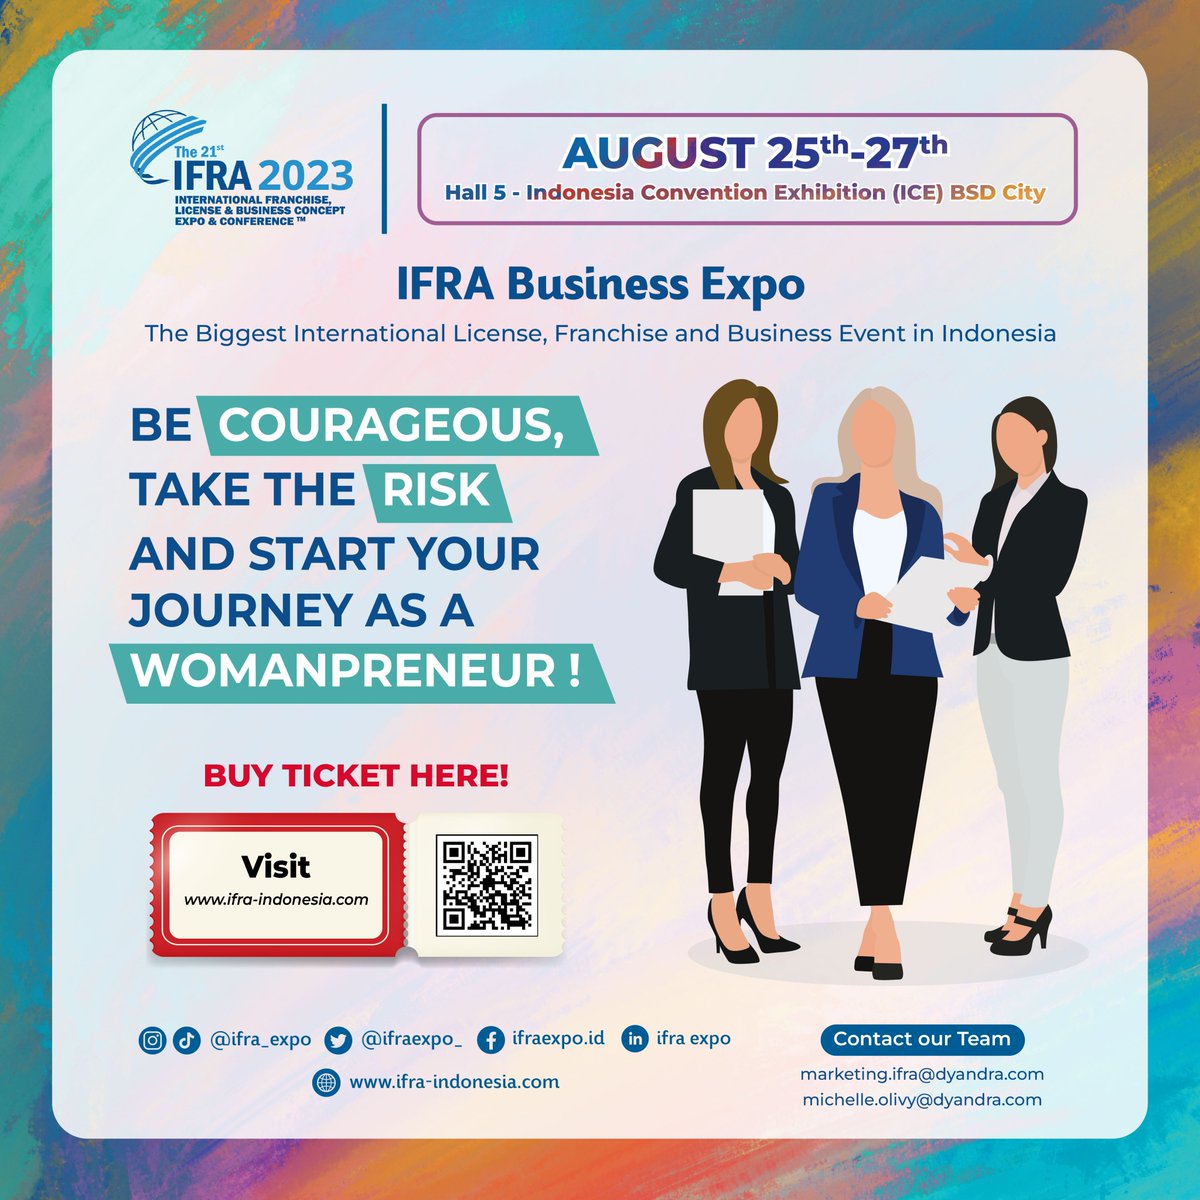 ✨BE A WOMANPRENEUR✨
Untuk para wanita, kalian bisa memulai bisnis kalian sendiri dan menjadi womanpreneur loh! Langsung aja
datang ke IFRA Business Expo 2023!